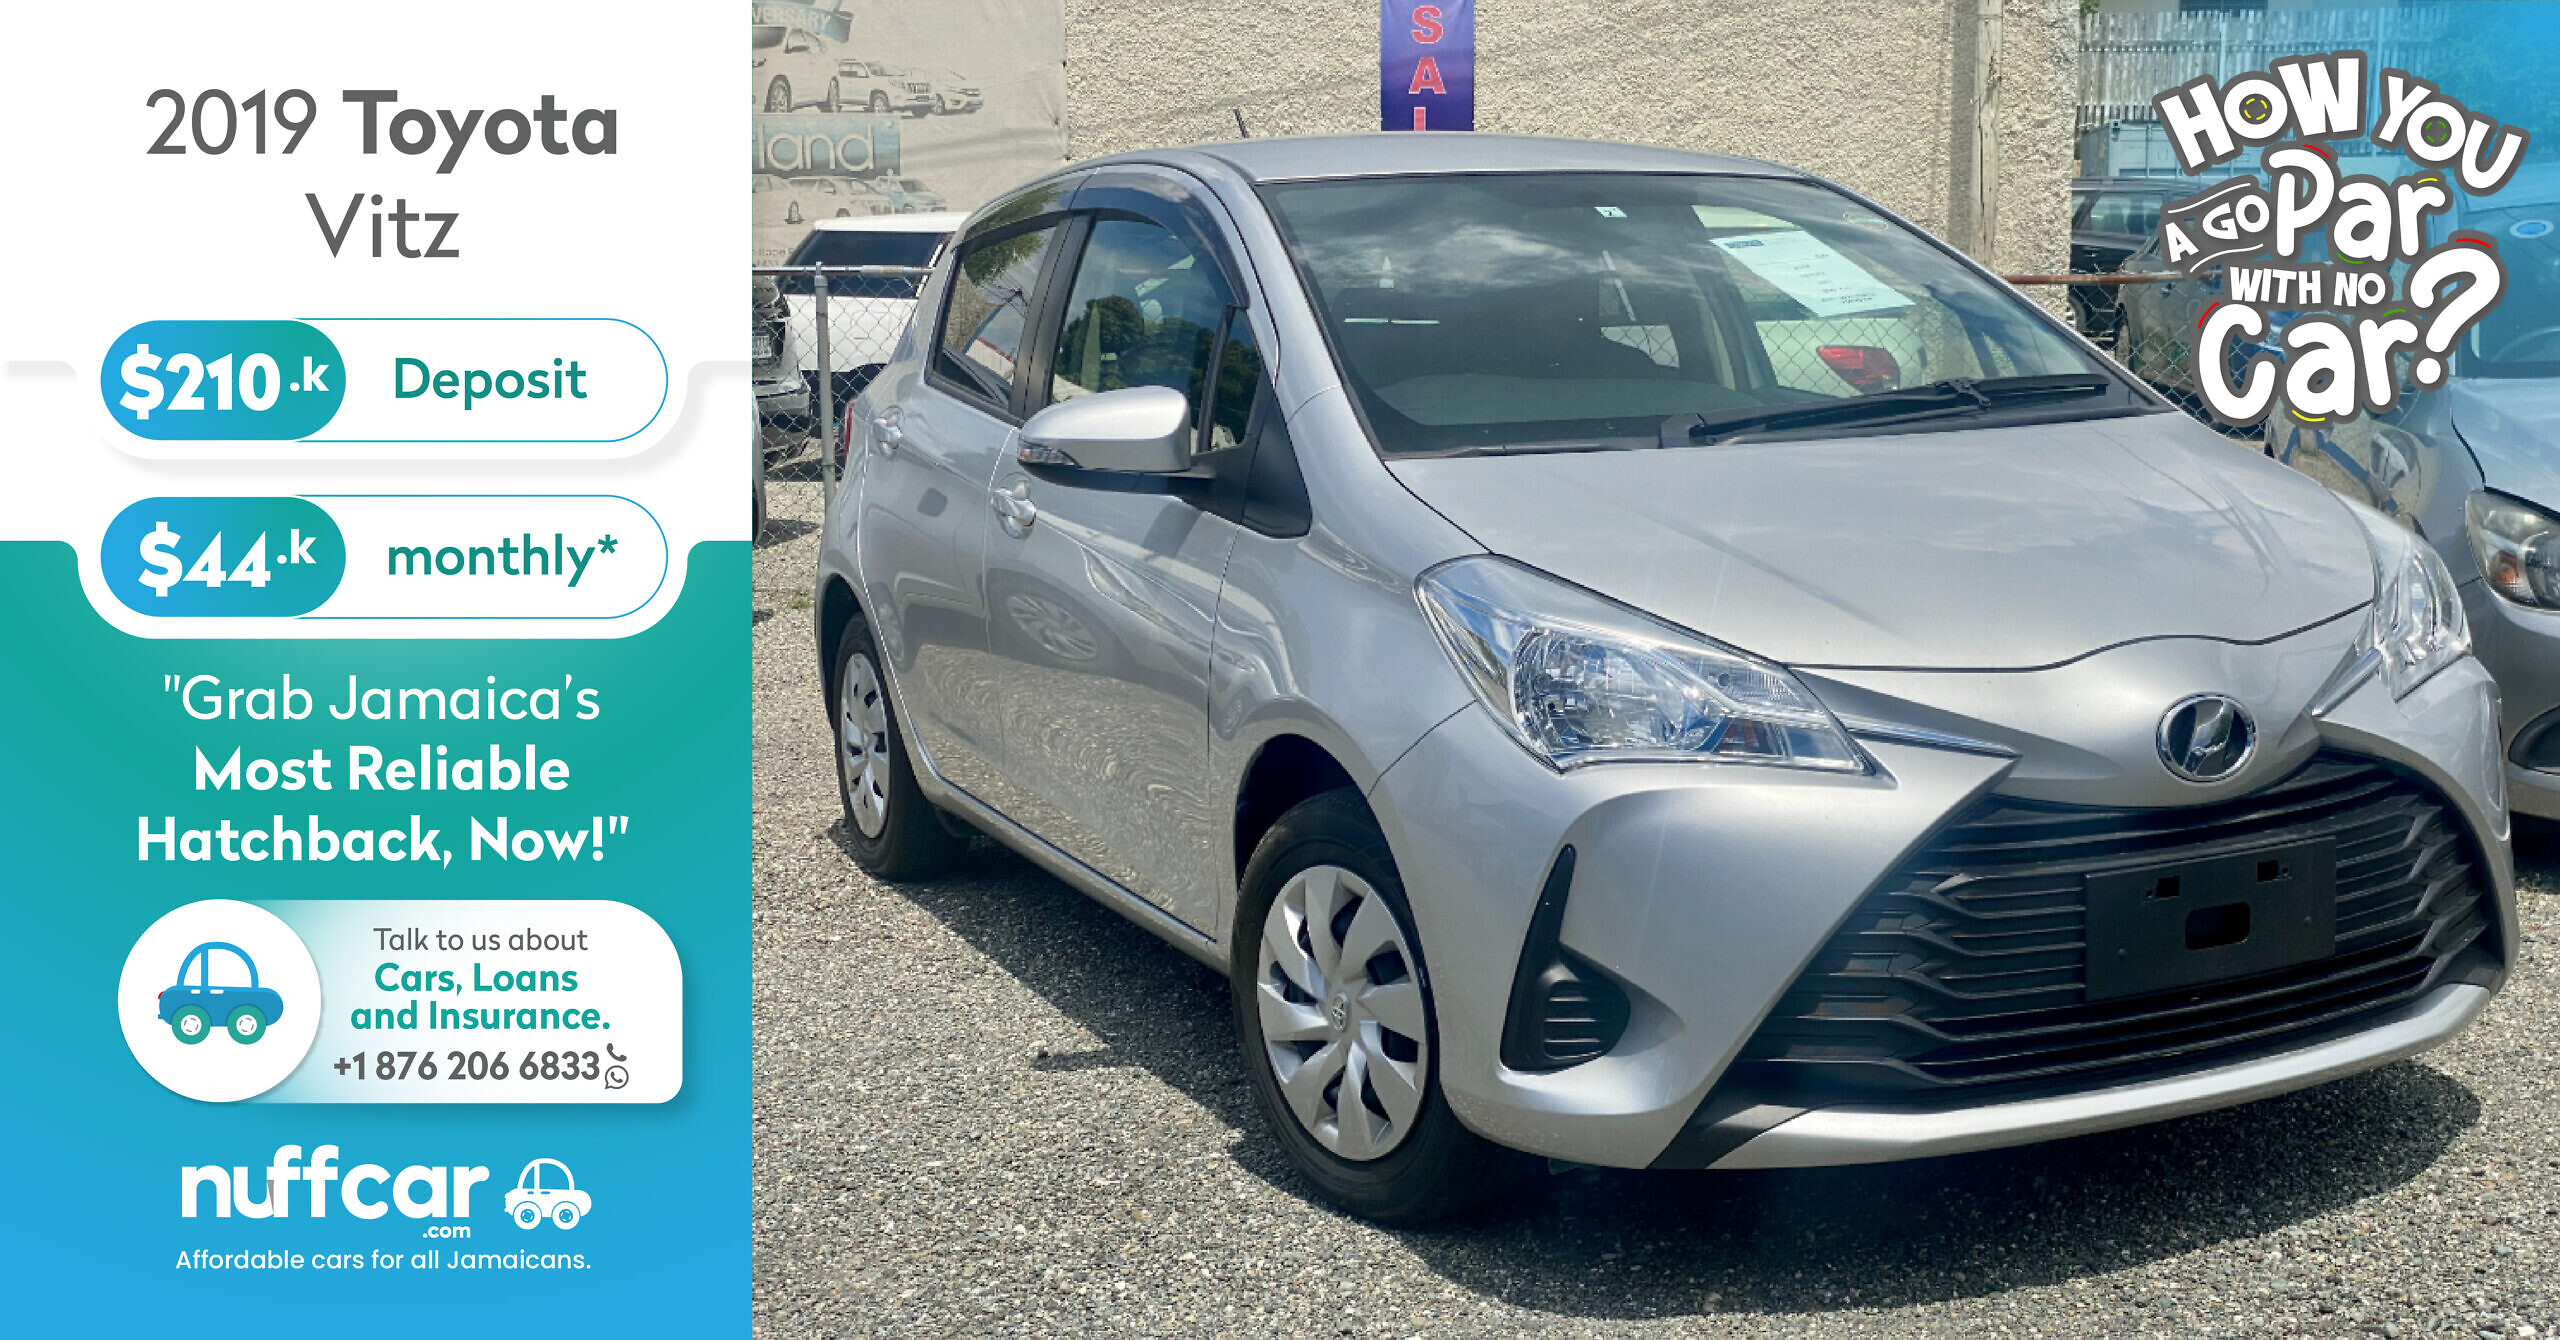 2019 Toyota Vitz – Get a Fast n Easy Low Deposit Car Loan